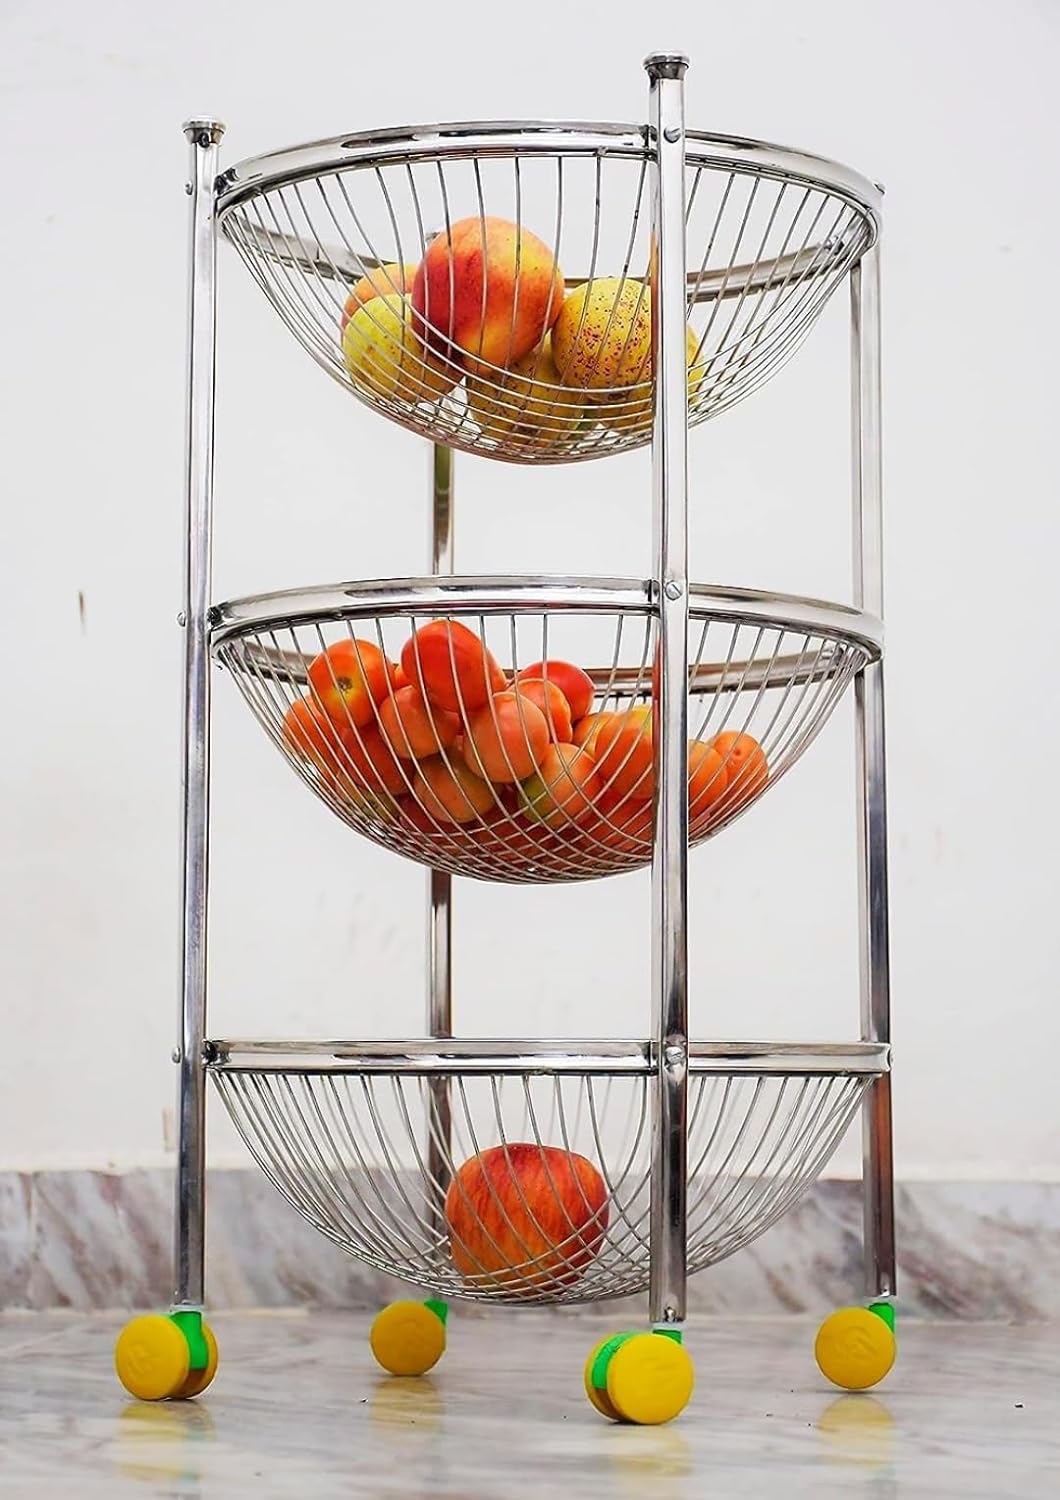 Buy Fruit Vegetable Storage Basket Kitchen Rack through iferi.com in Bangladesh